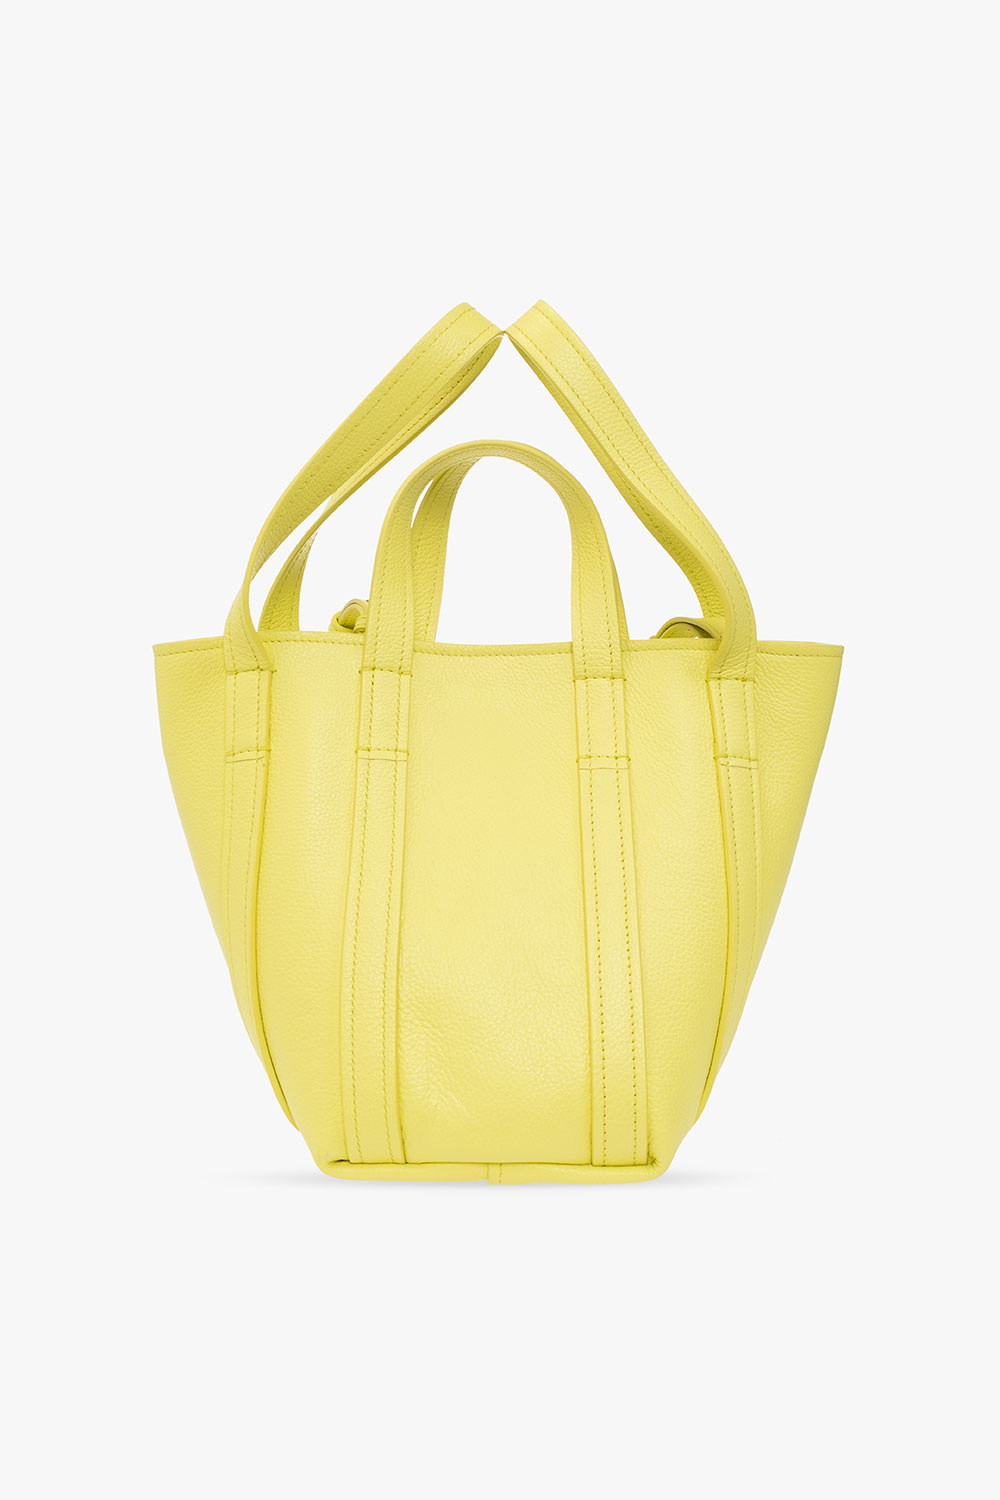 Balenciaga ‘Everyday 2.0 XS’ shopper bag